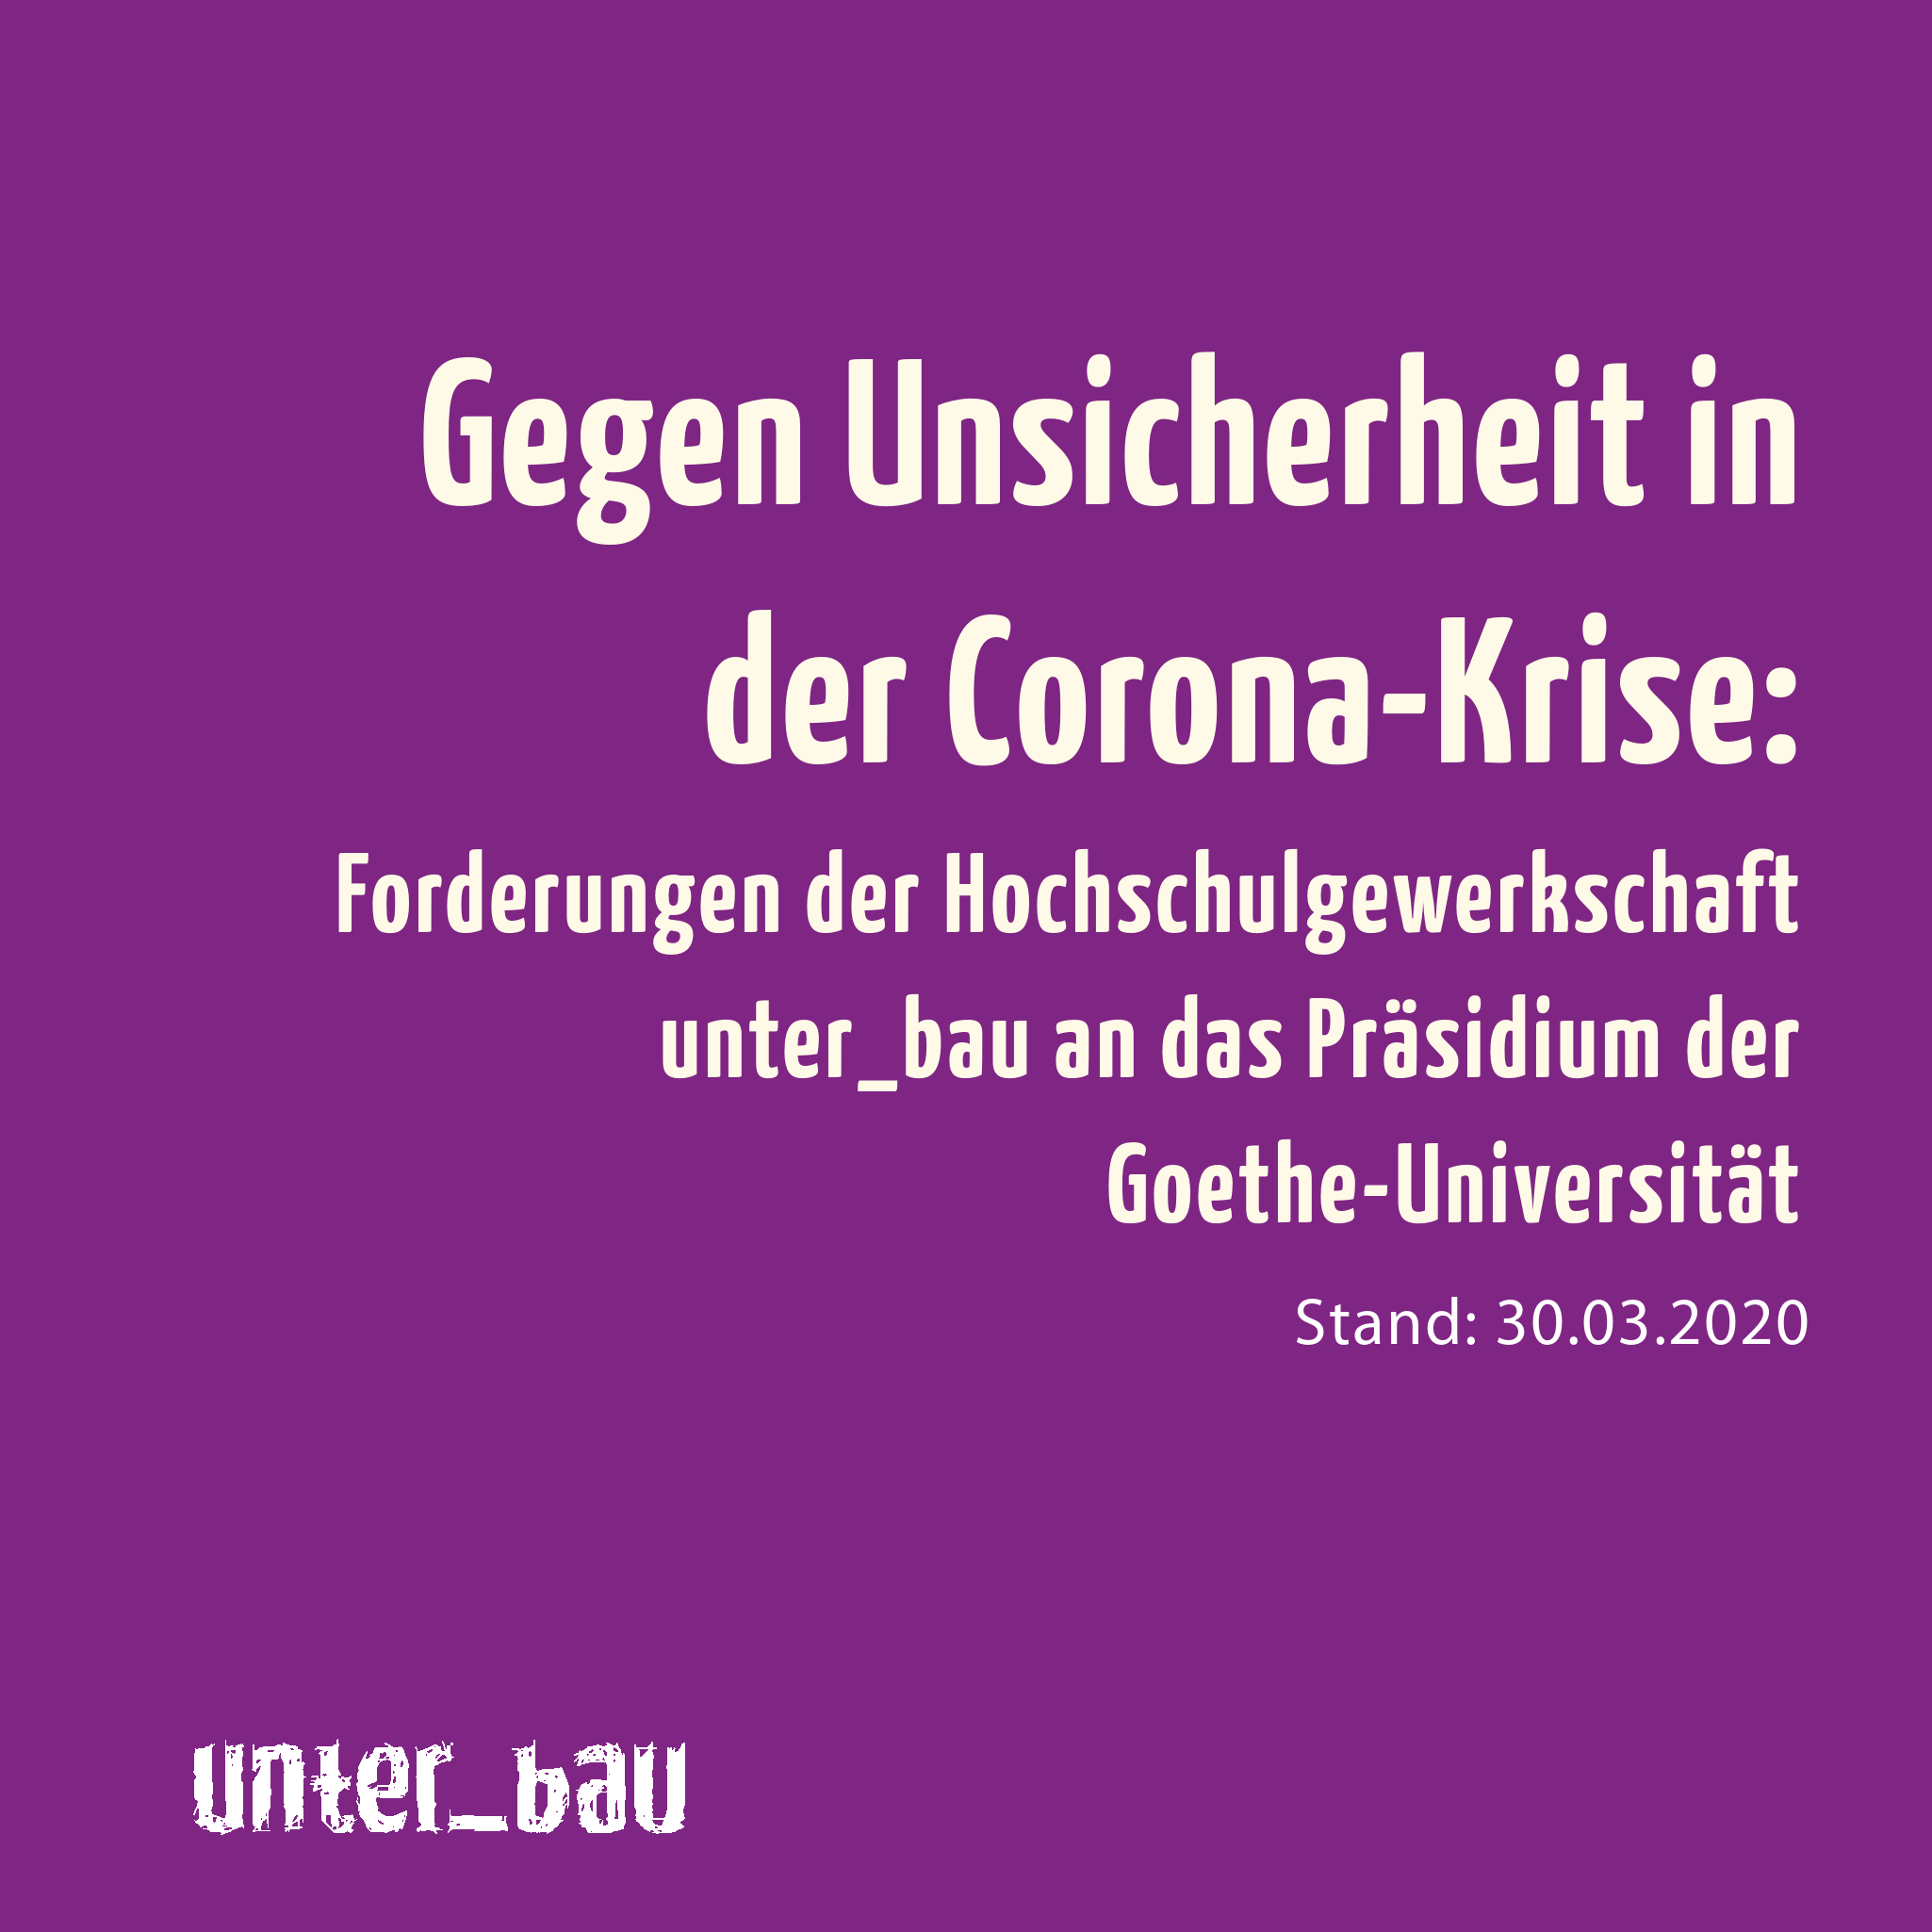 Gegen Unsicherheit in der Corona-Krise: Forderungen der Hochschulgewerkschaft unter_bau an das Präsidium der Goethe-Universität.